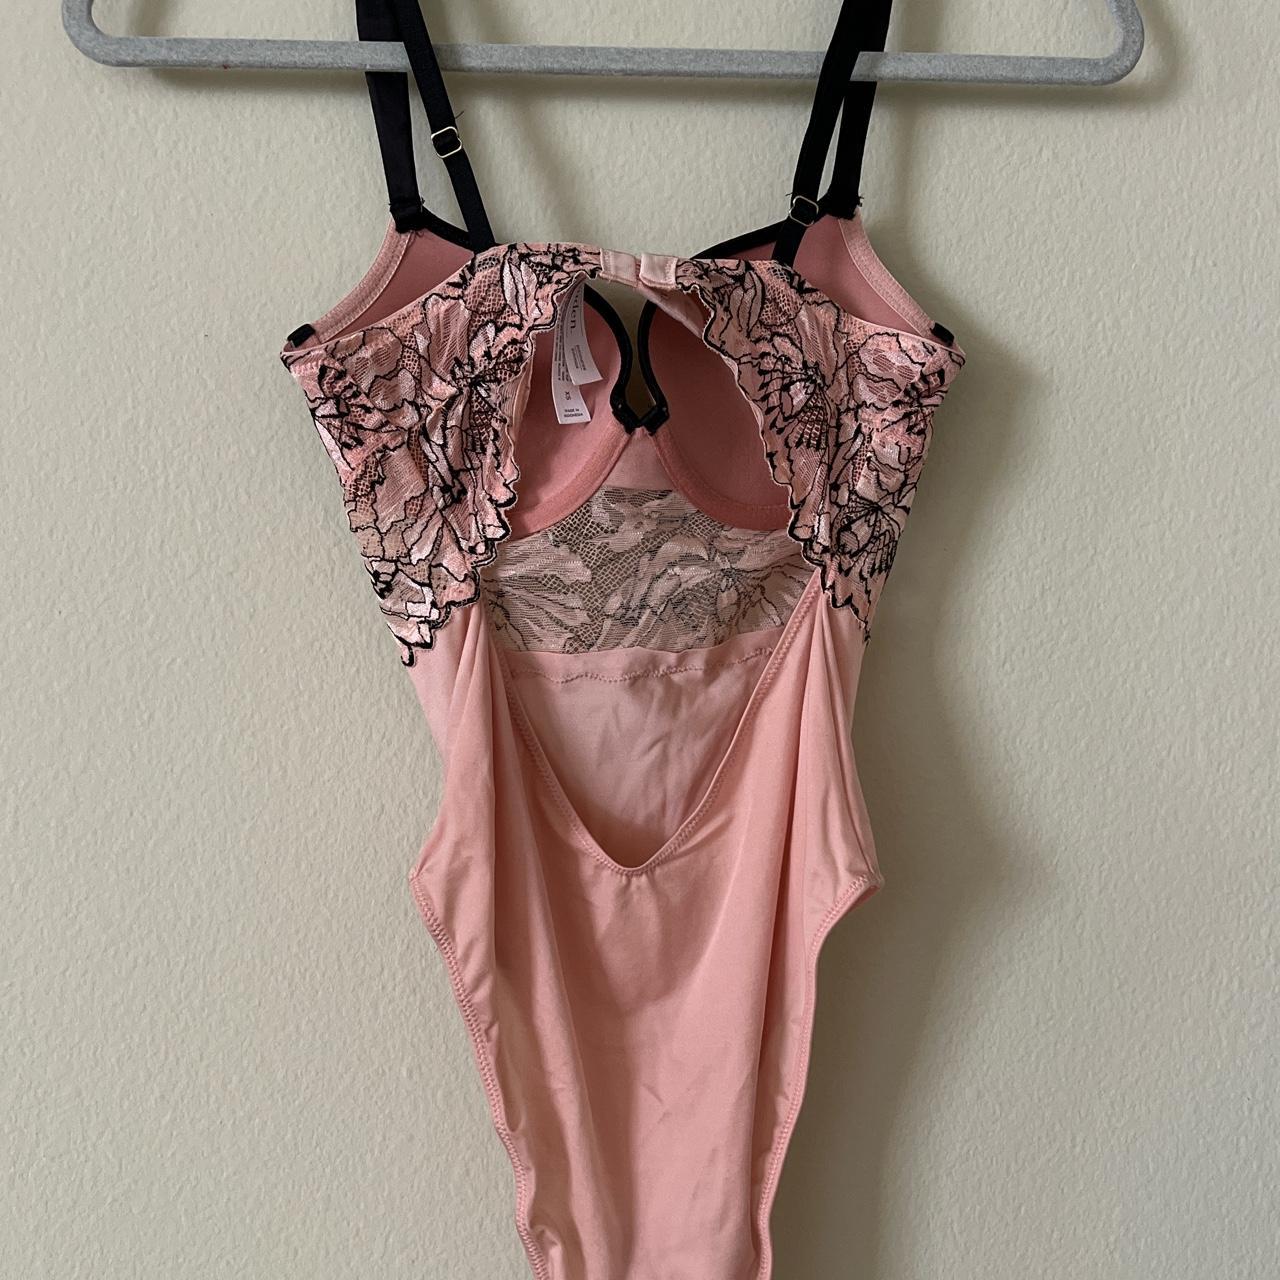 lingerie lace bodysuit - pink + black, size xs - Depop